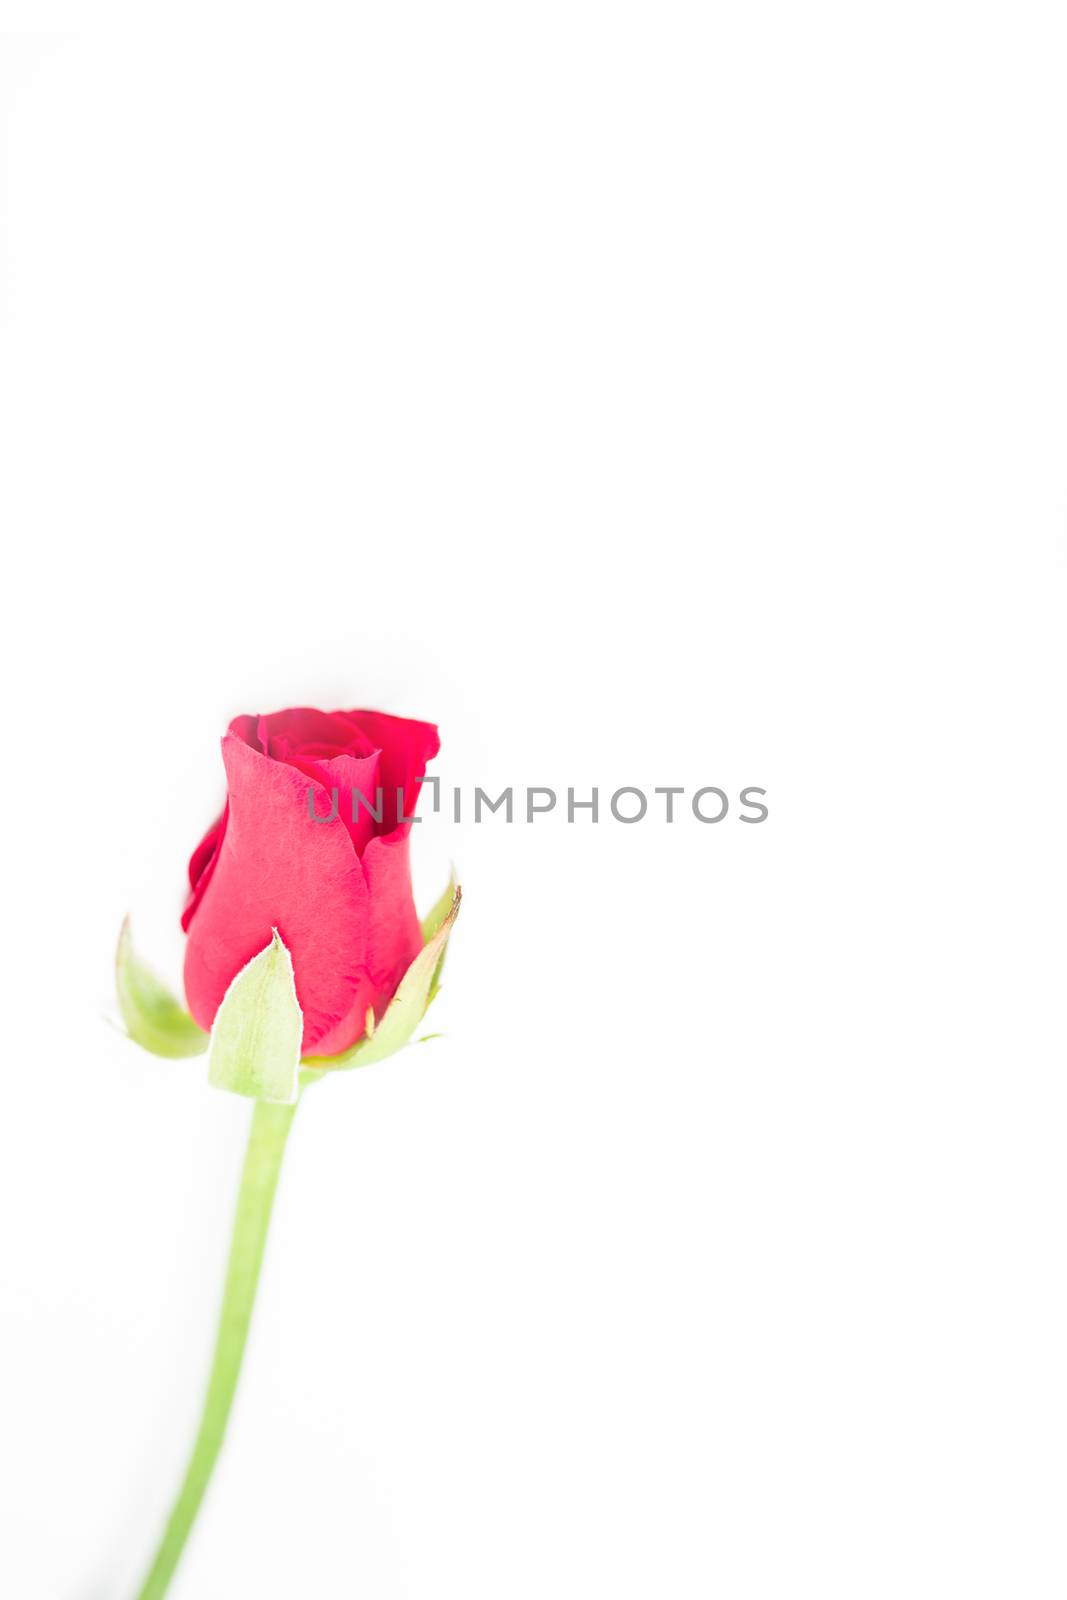 Pink rose by Wavebreakmedia